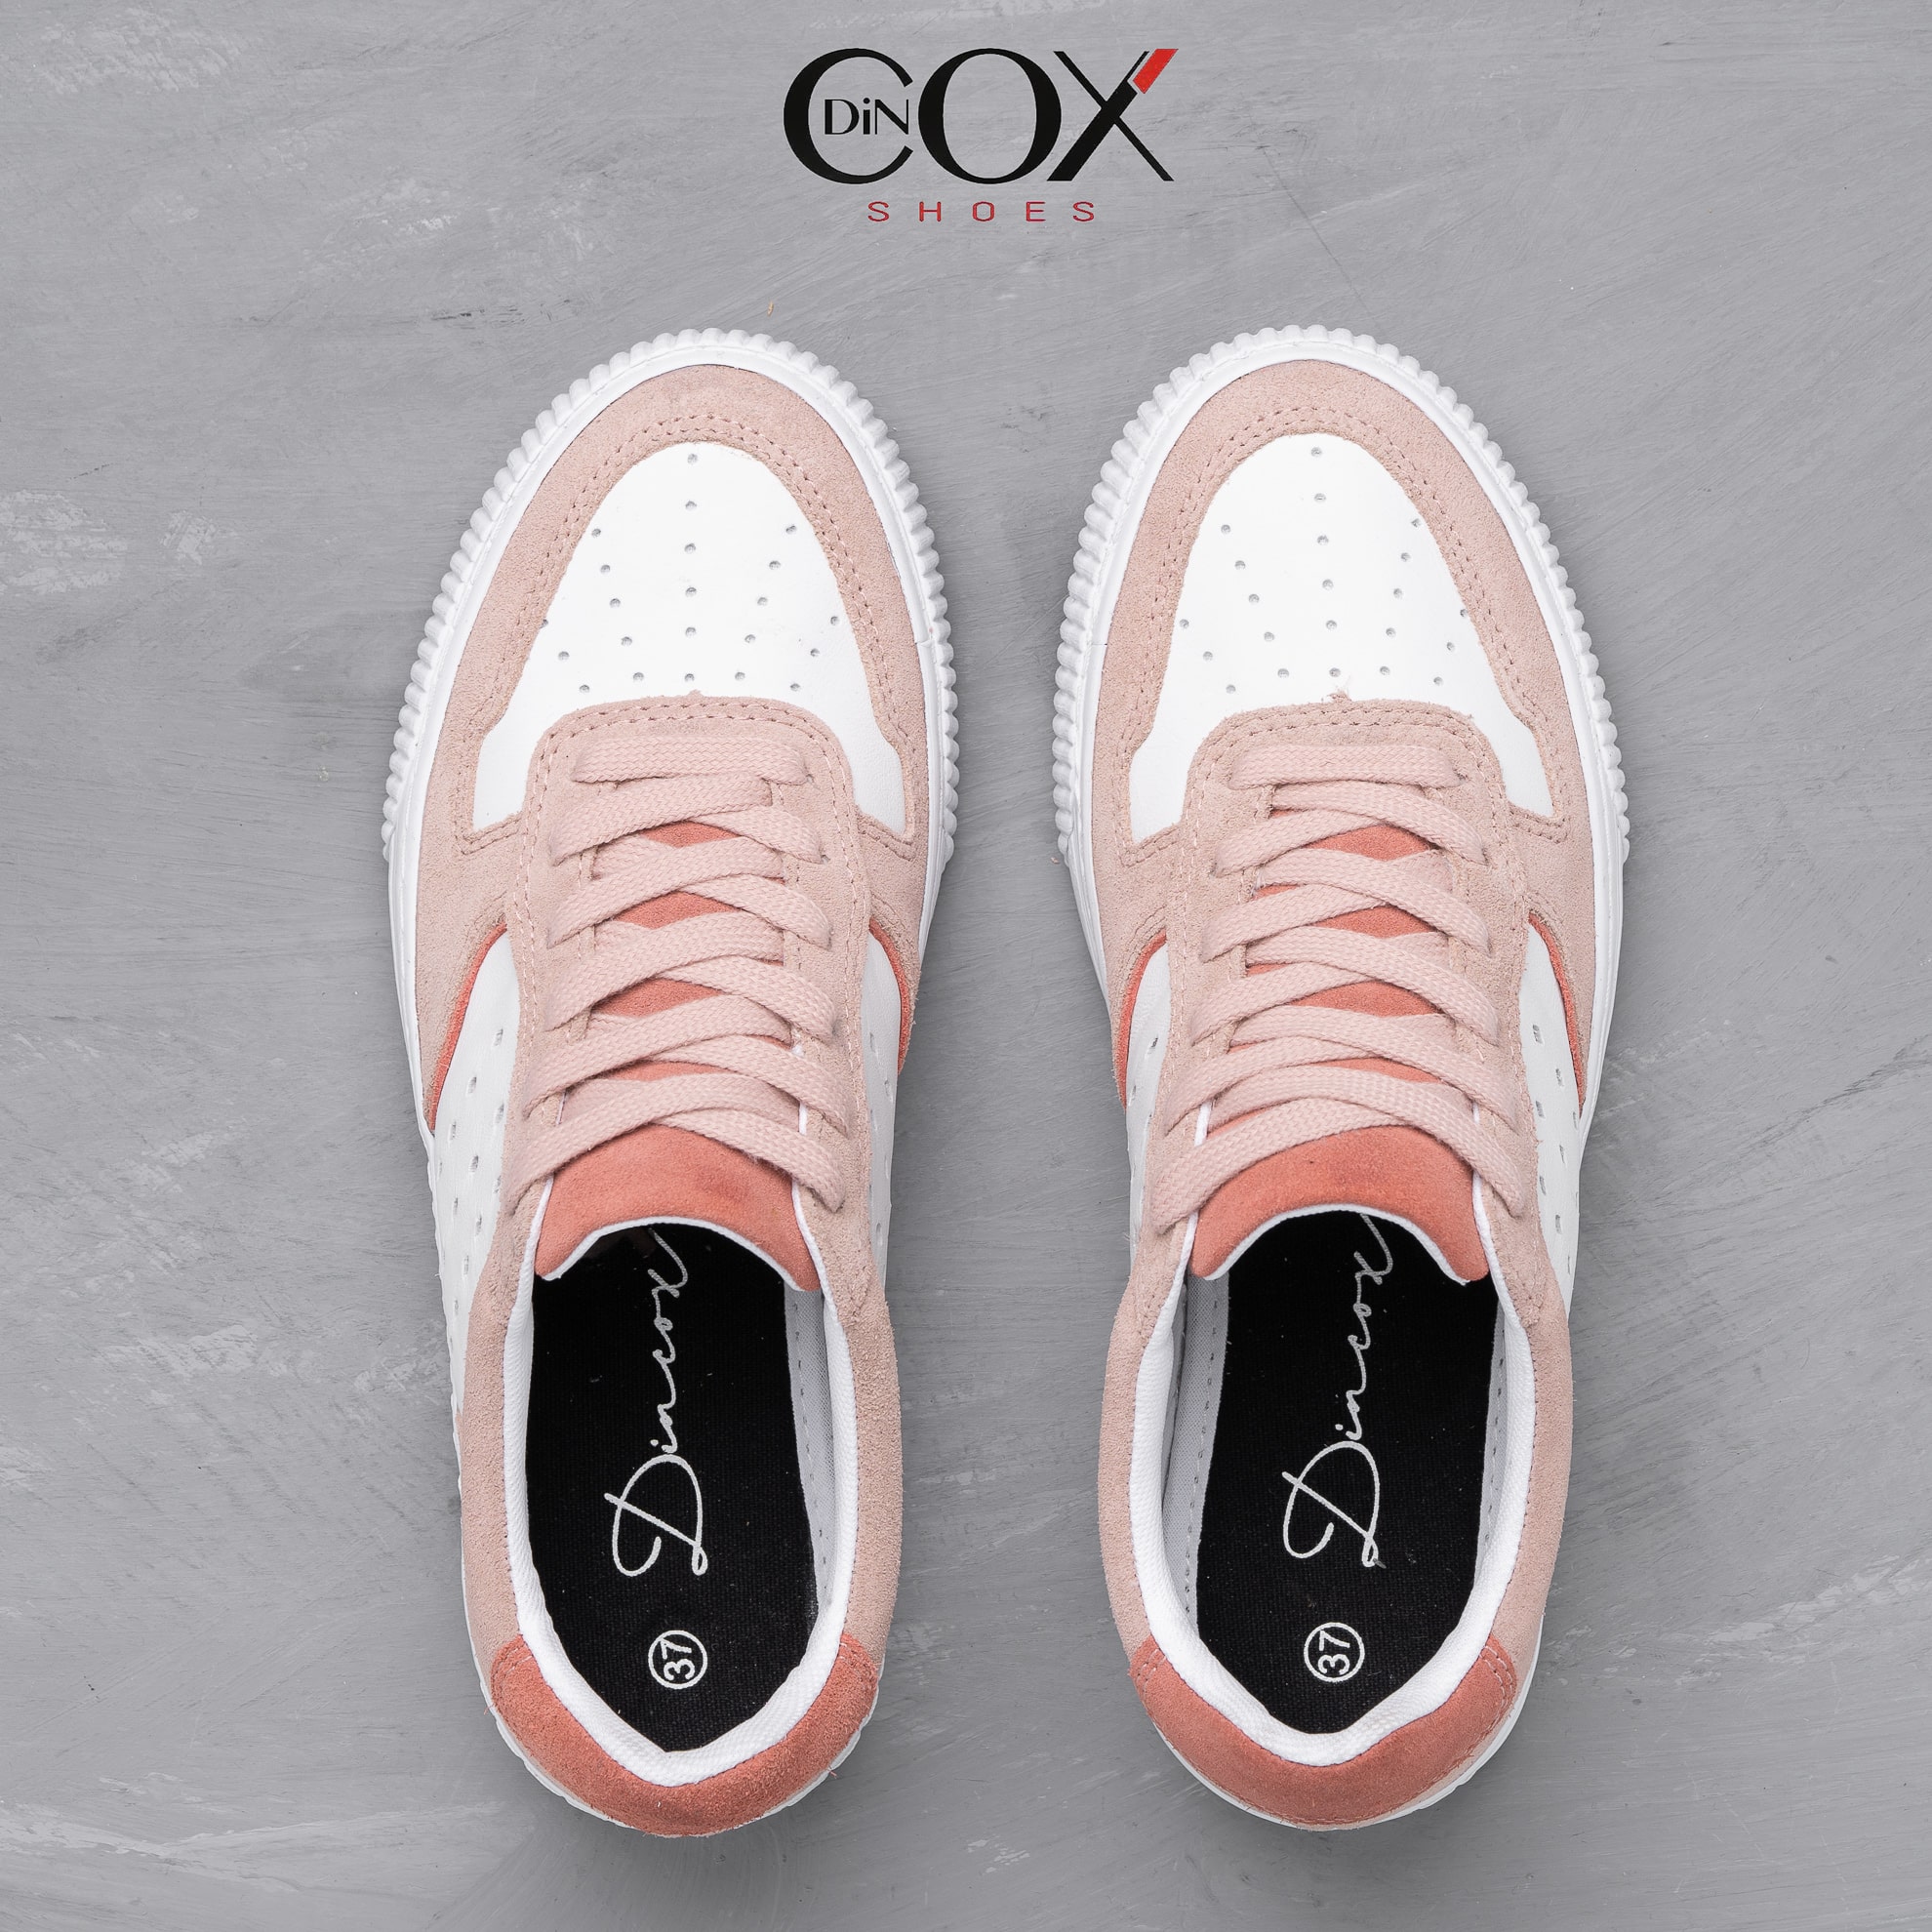 Giày Sneaker Nữ Da Bò Thật DINCOX E03 Pink Sang Trọng